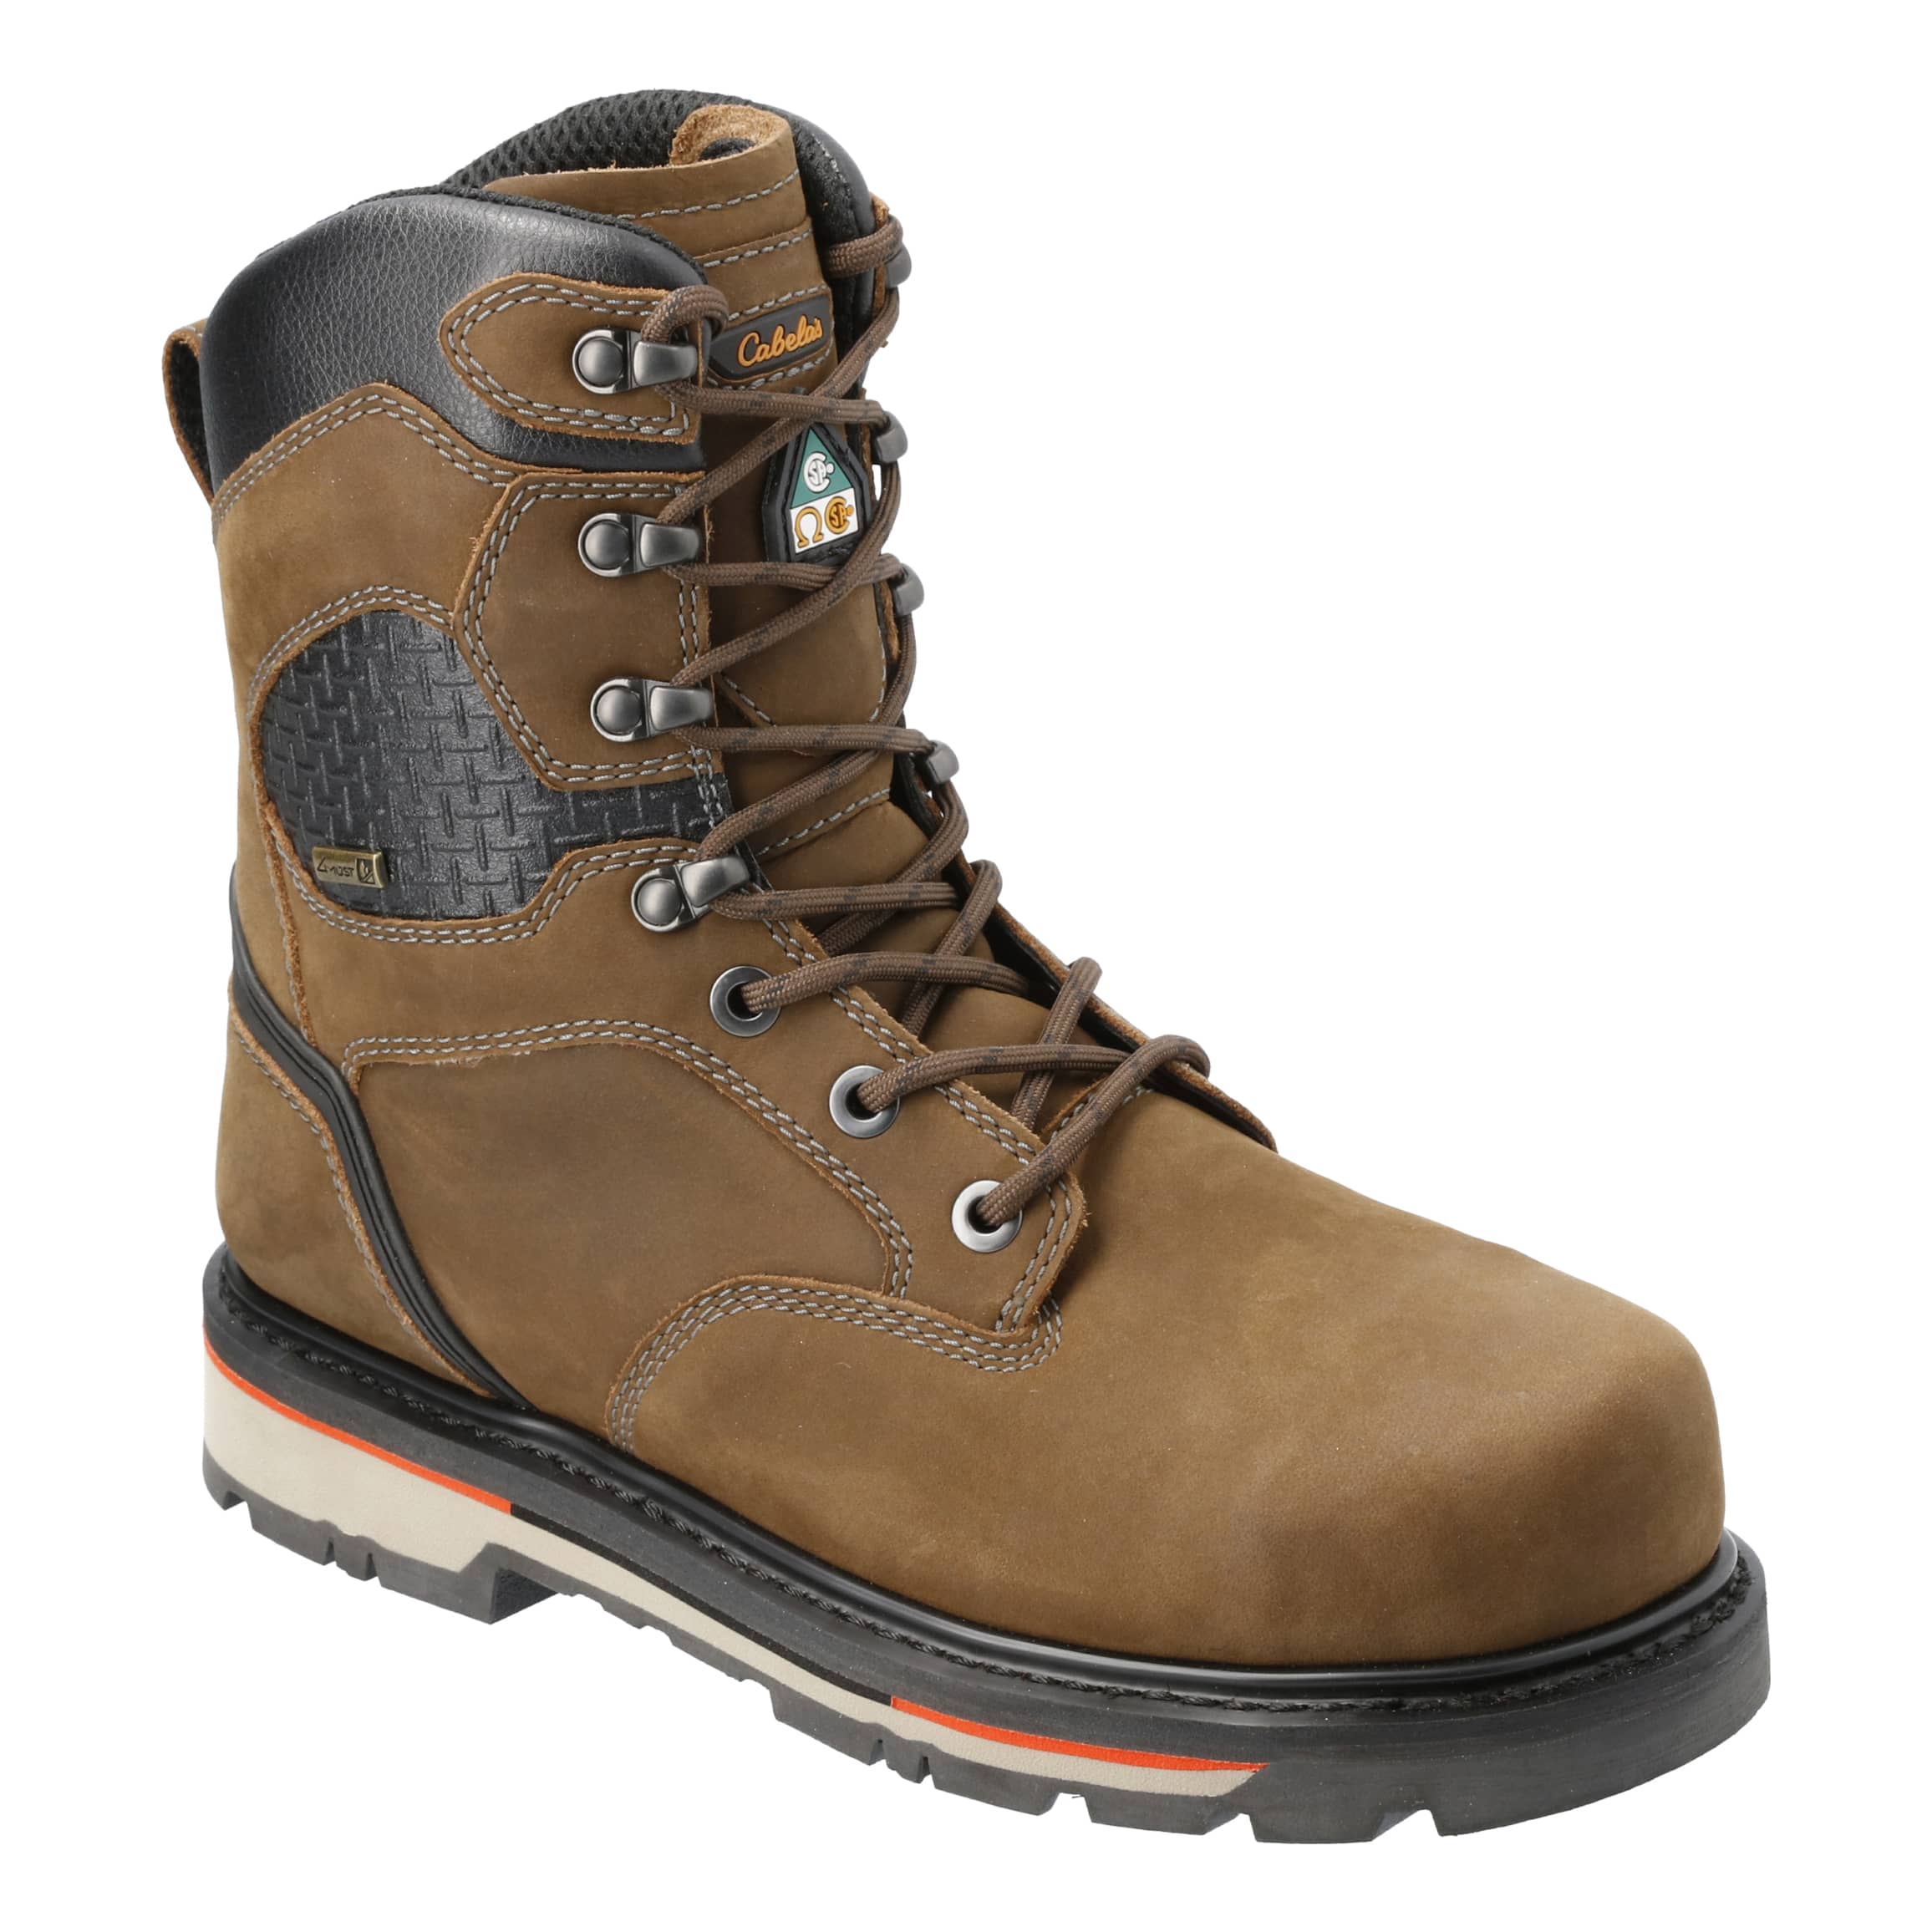 Cabela's Roughneck Overhaul Waterproof Work Boots For Men, 47% OFF